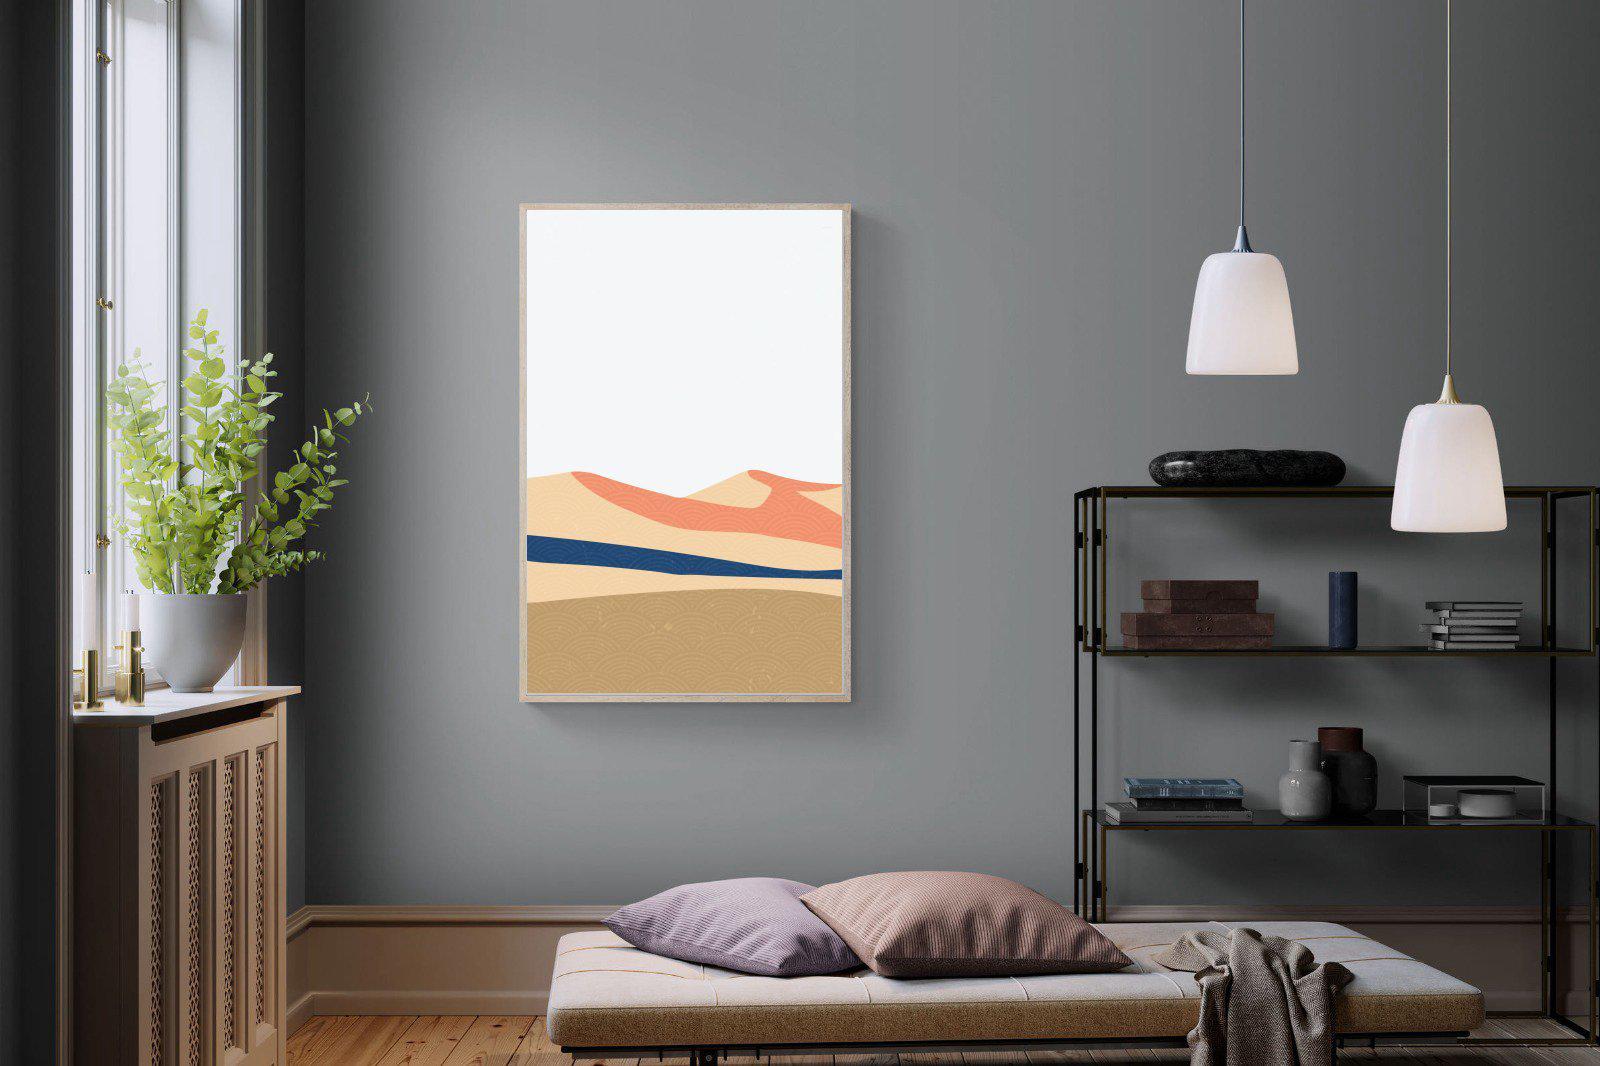 Frederik-Wall_Art-100 x 150cm-Mounted Canvas-Wood-Pixalot